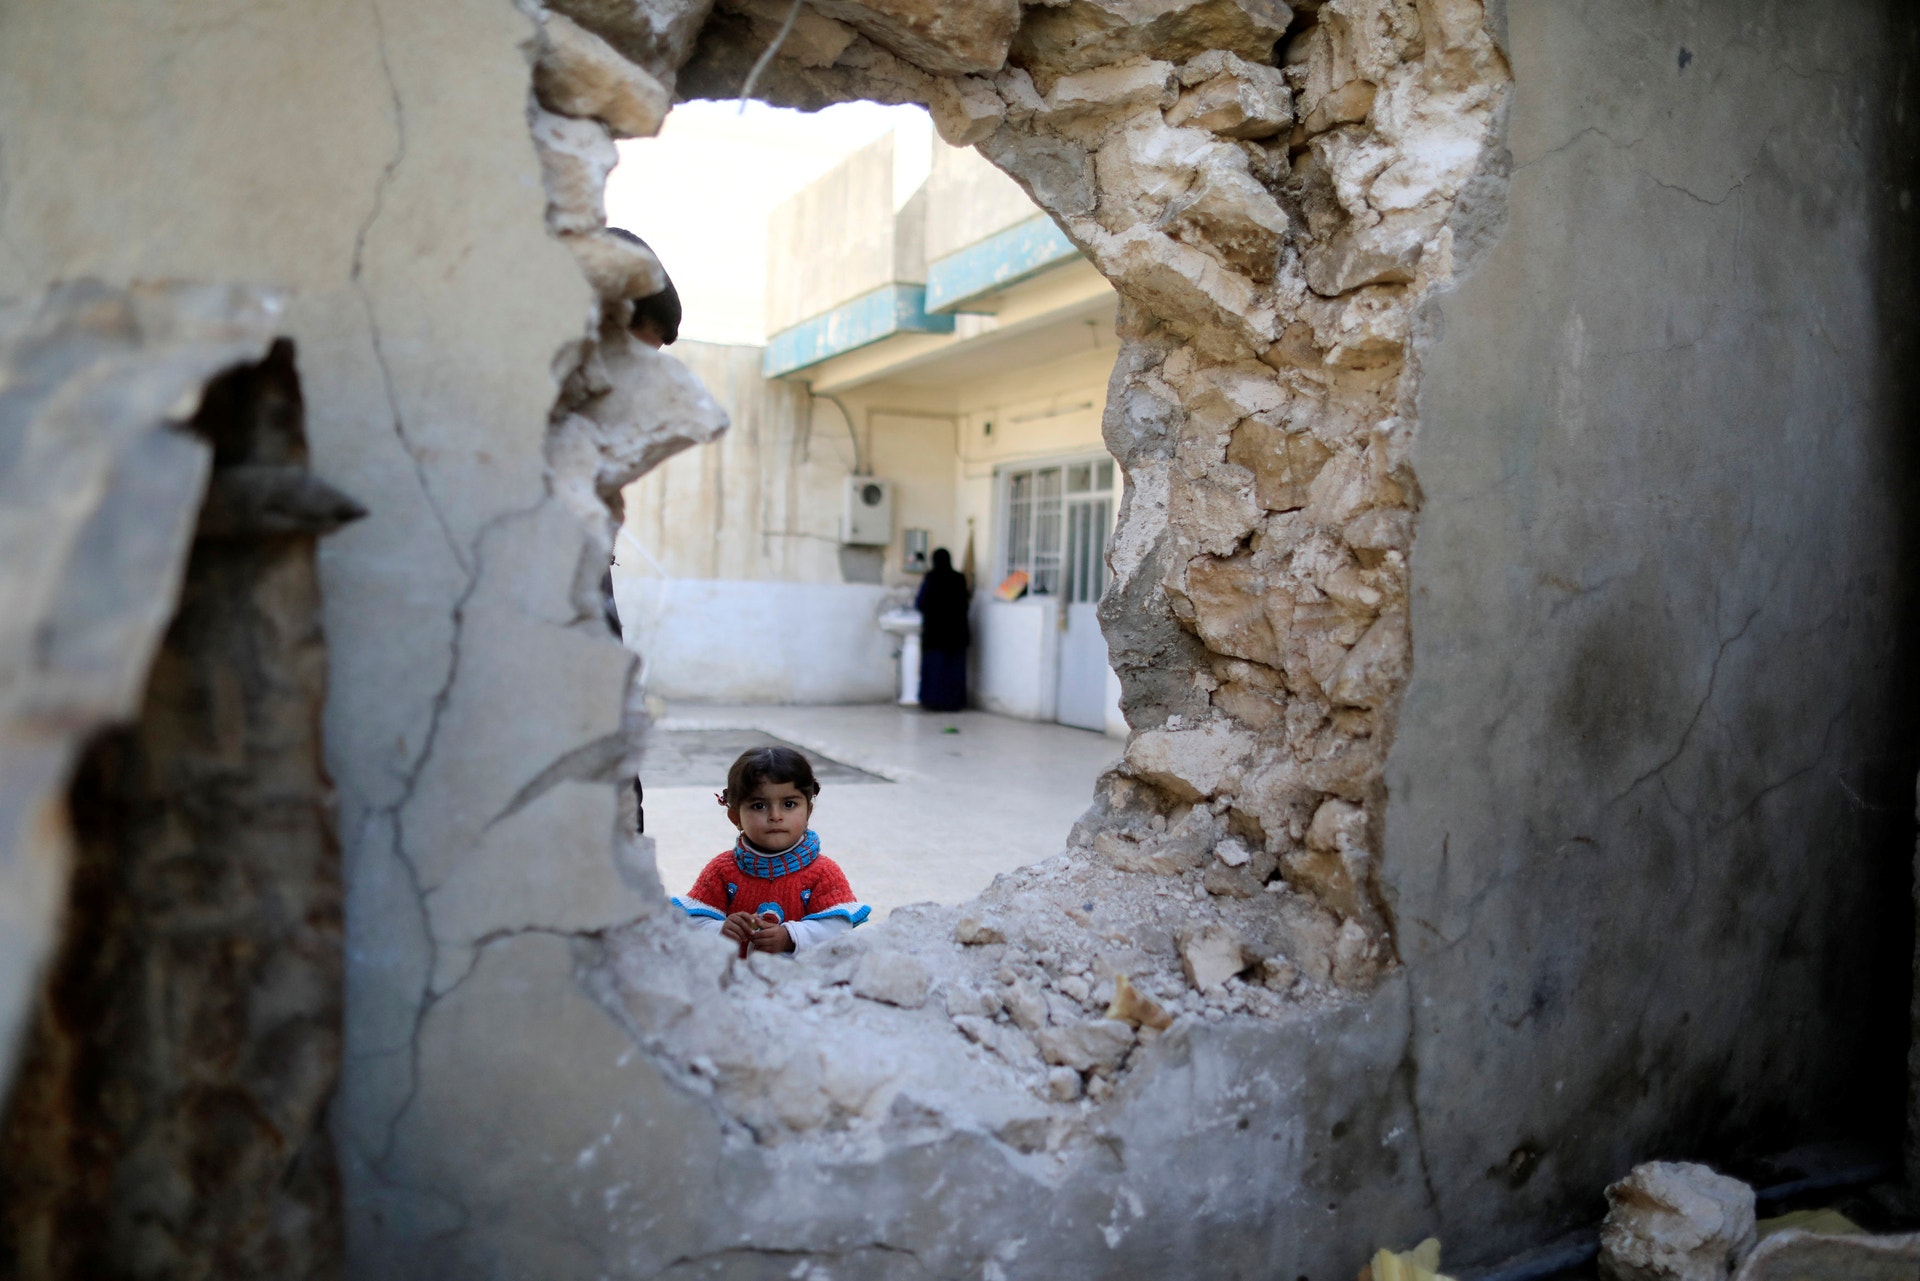  Thaier Al-Sudani - Reuters 